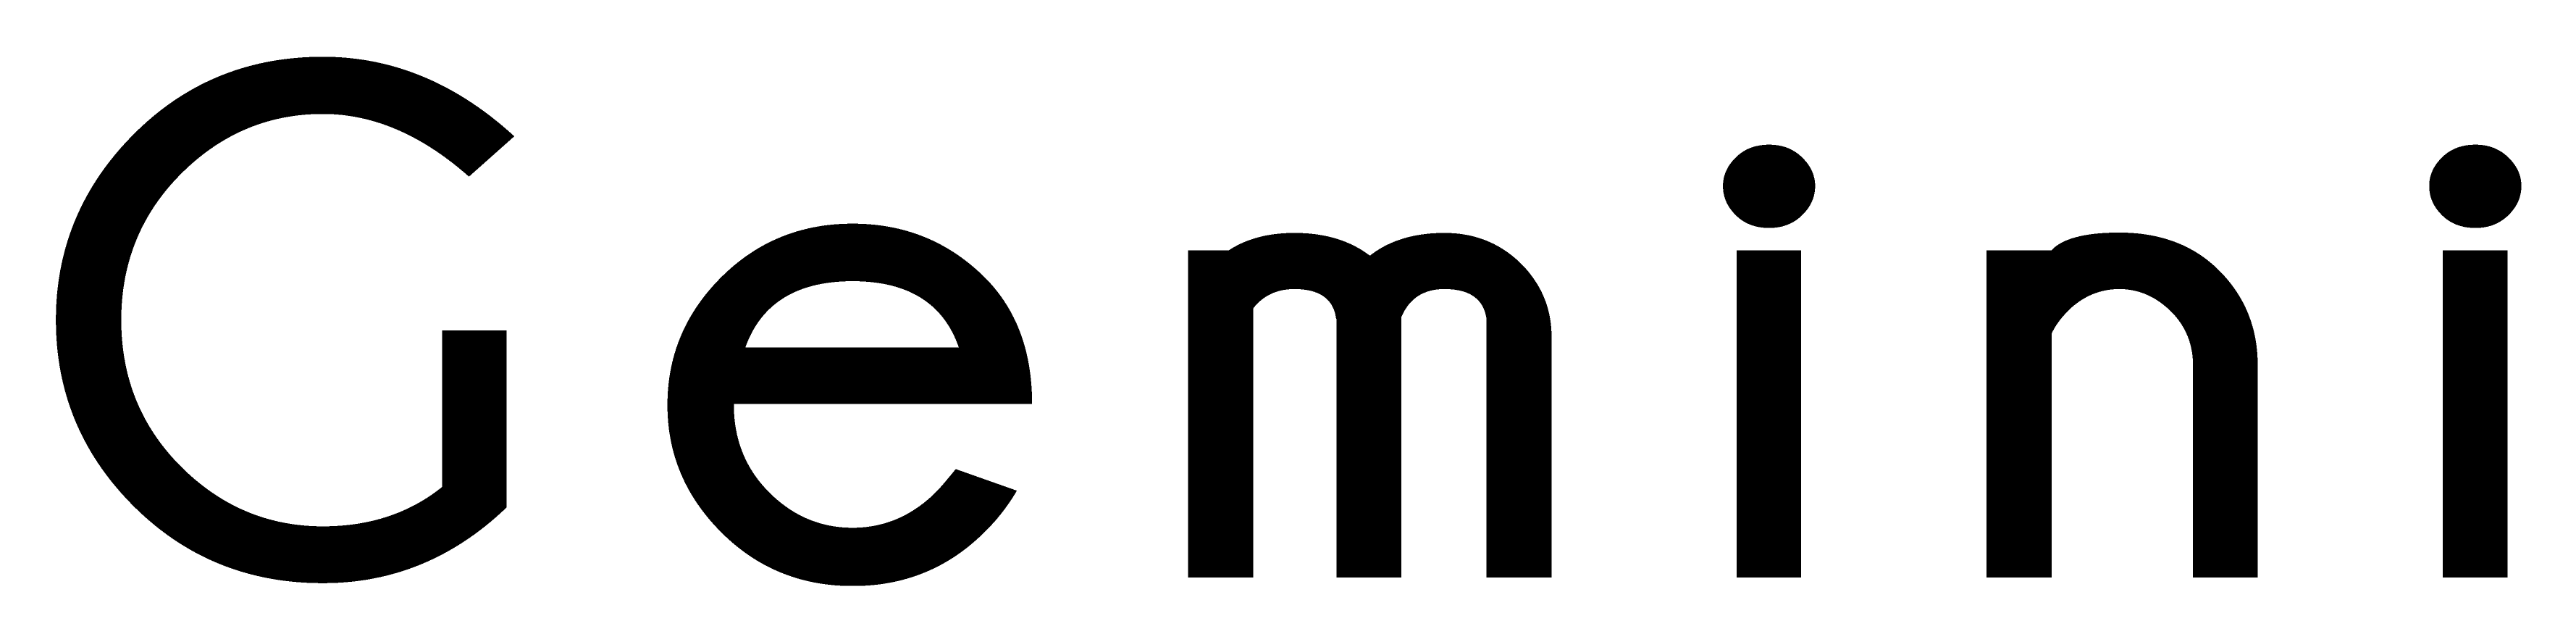 のコンカフェ「Gemini」のロゴ